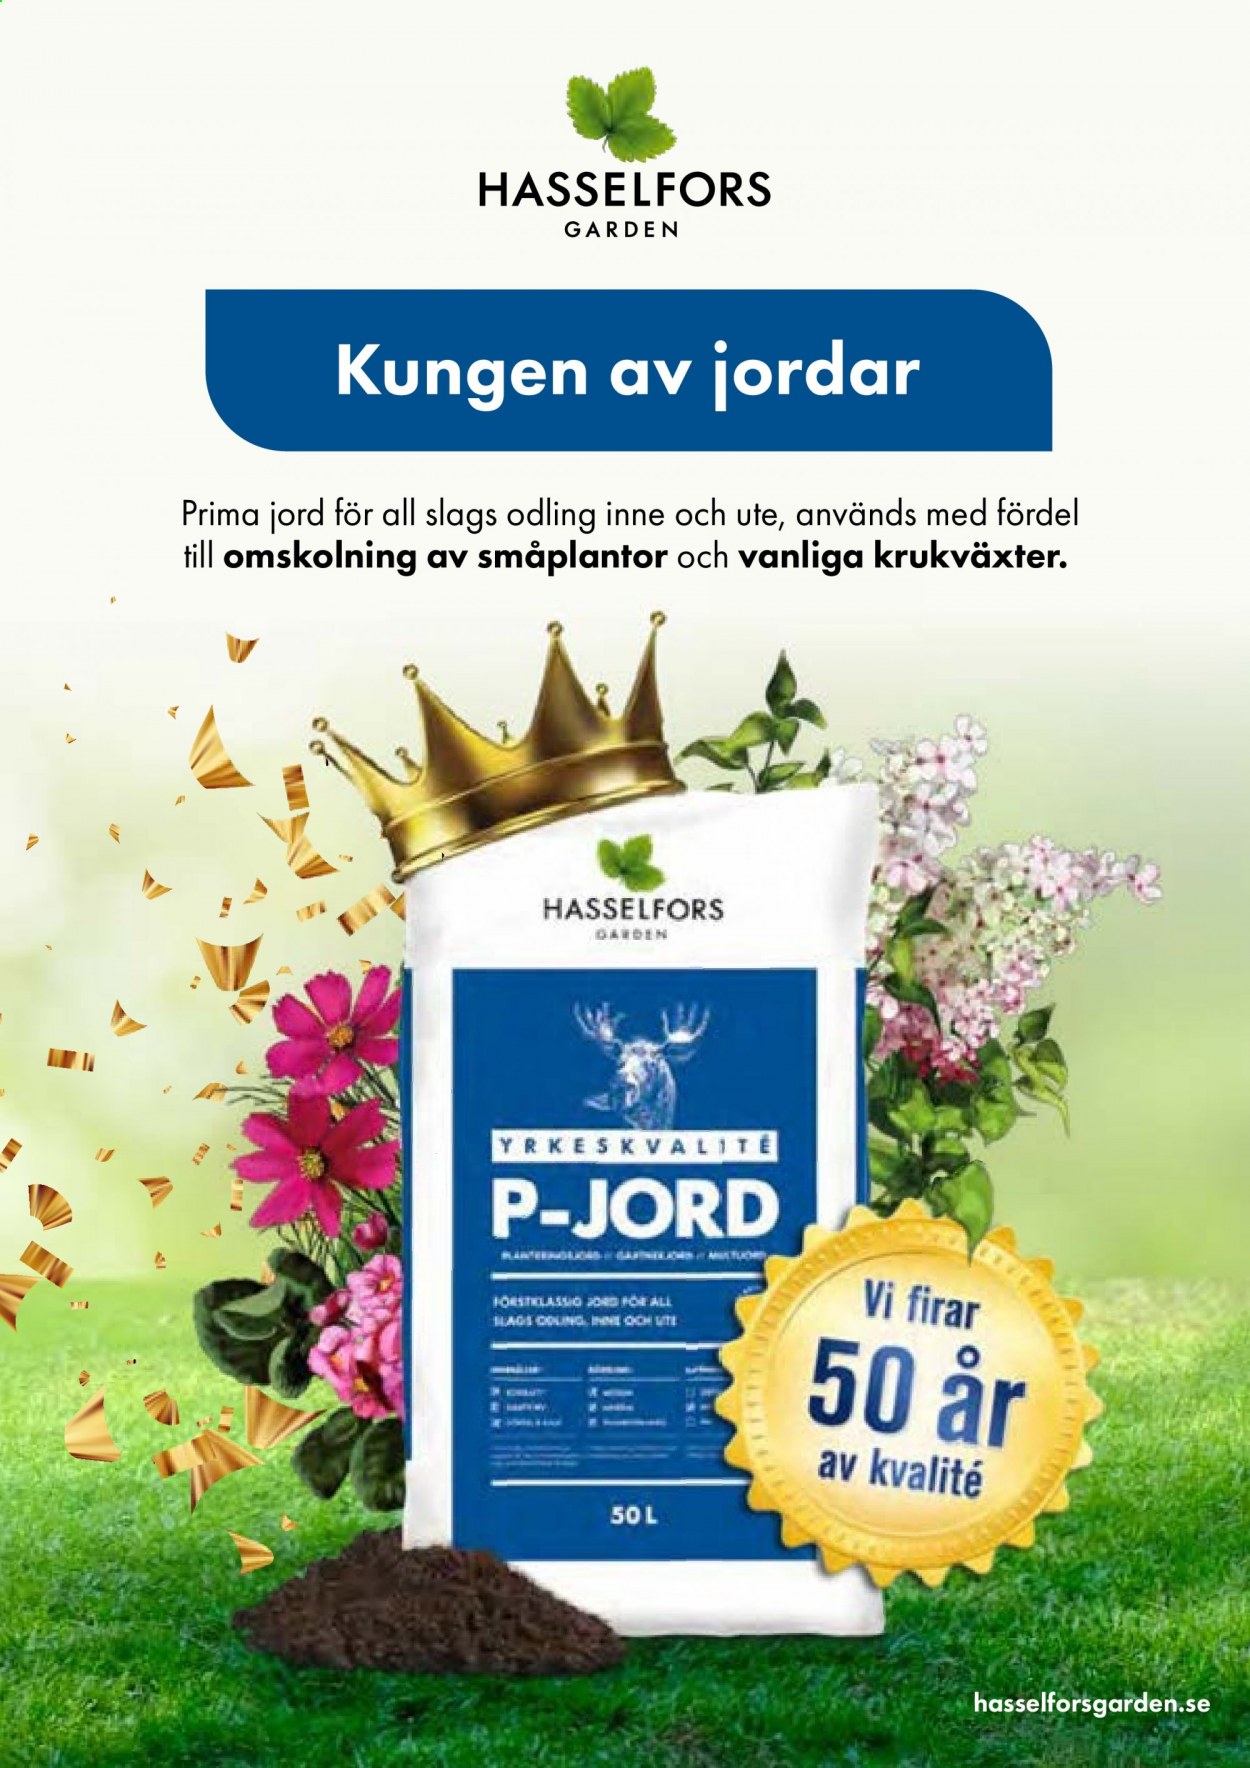 Blomsterlandet reklamblad.